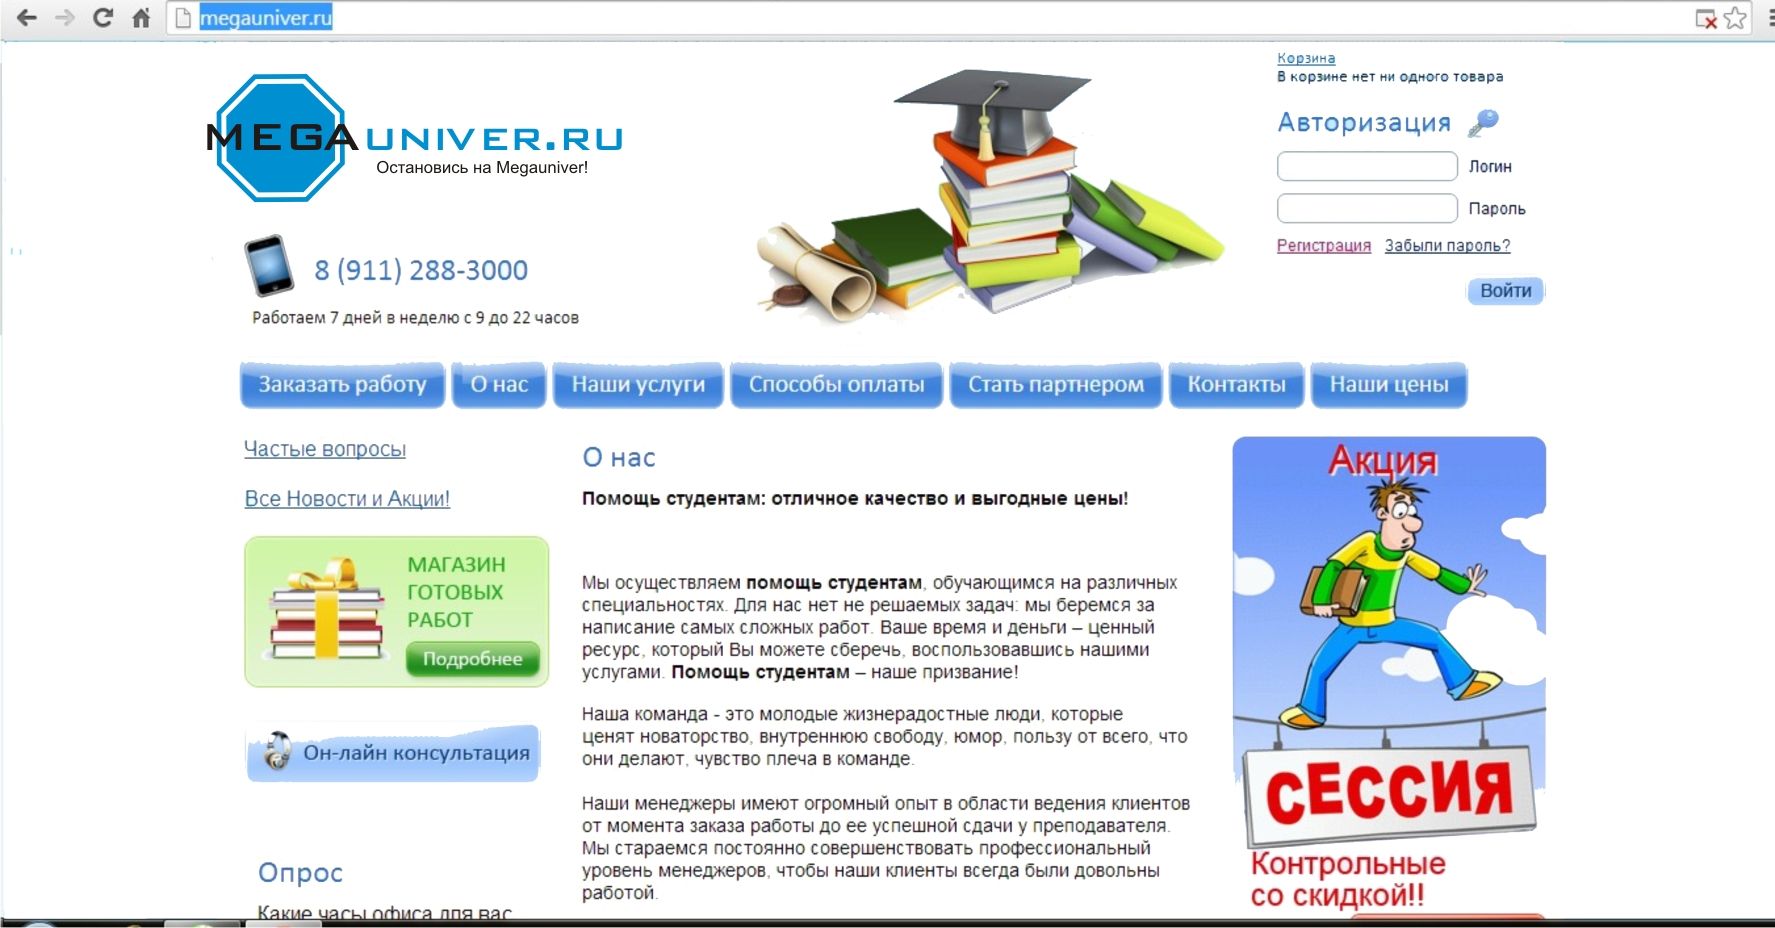 Разработка логотипа для сайта megauniver.ru - дизайнер FishInka